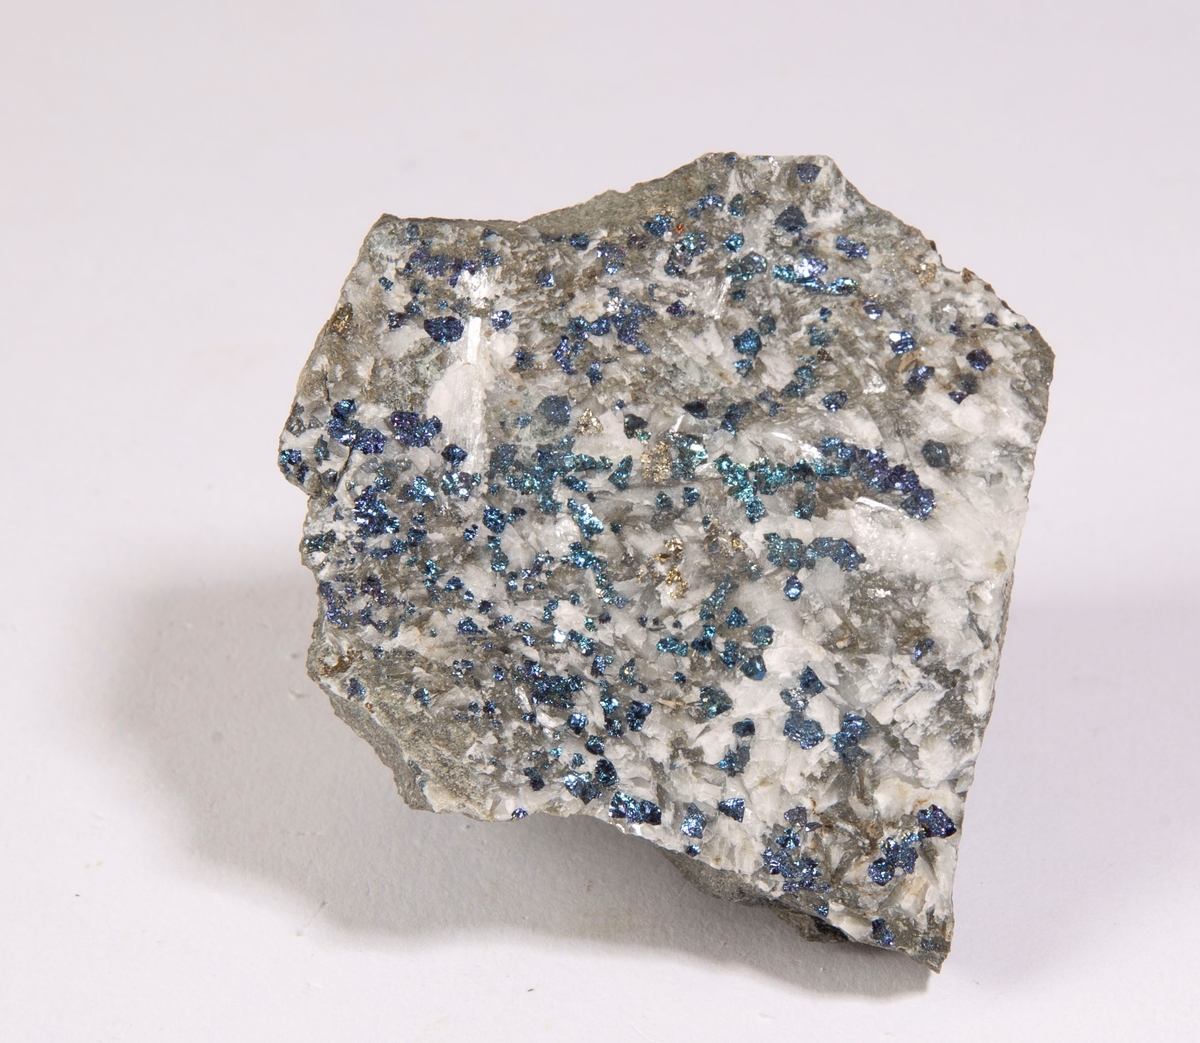 Krystaller av bornitt på sprekkeflate sammen med kalsitt, noe kobberkis.
Mildigkeit Gottes gruve, 84 m.